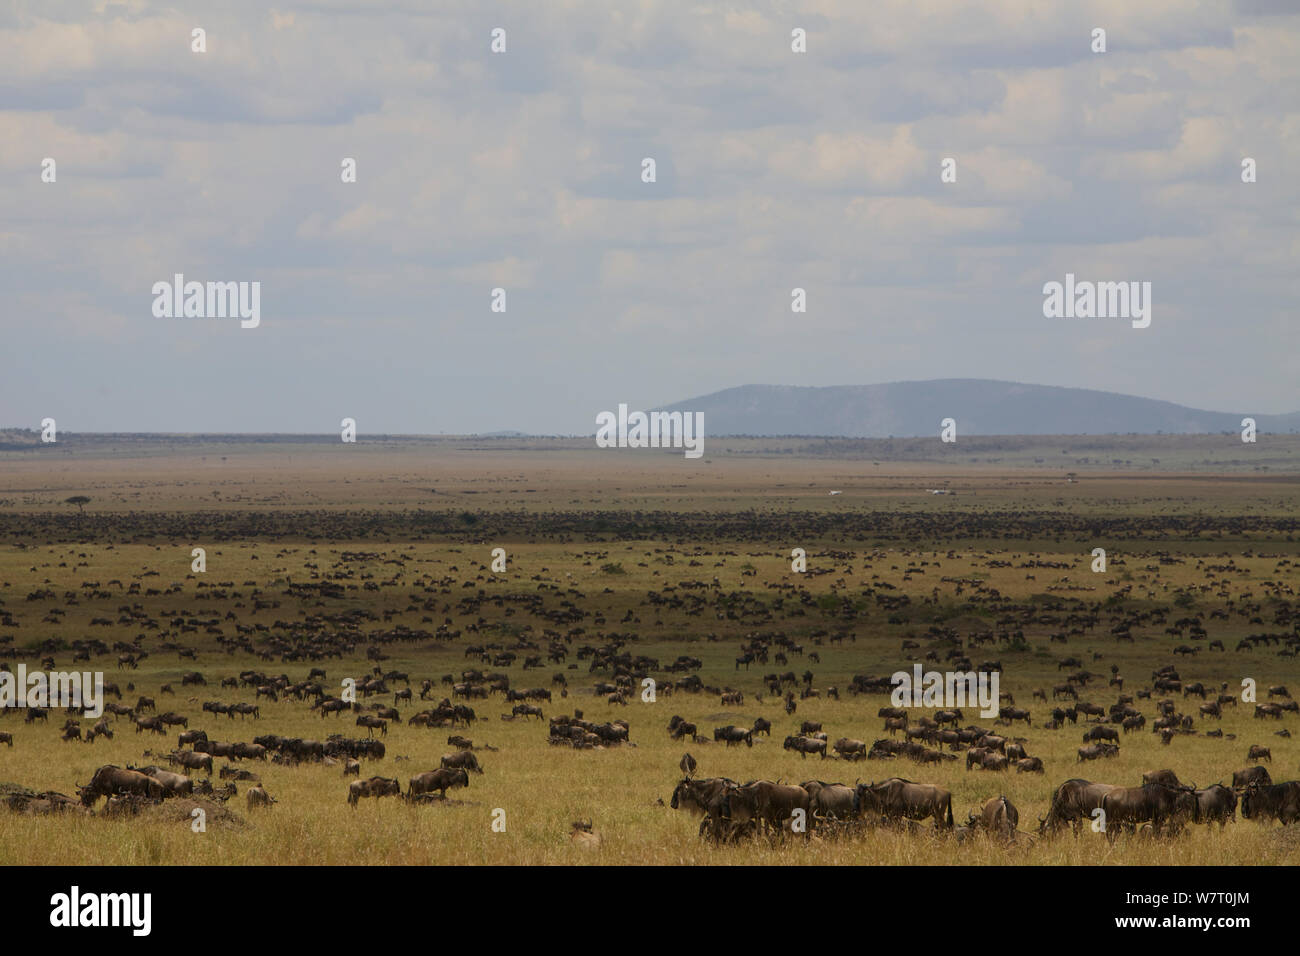 Le Gnou bleu (Connochaetes taurinus) la migration dans le Masai Mara, Kenya, Afrique. Banque D'Images